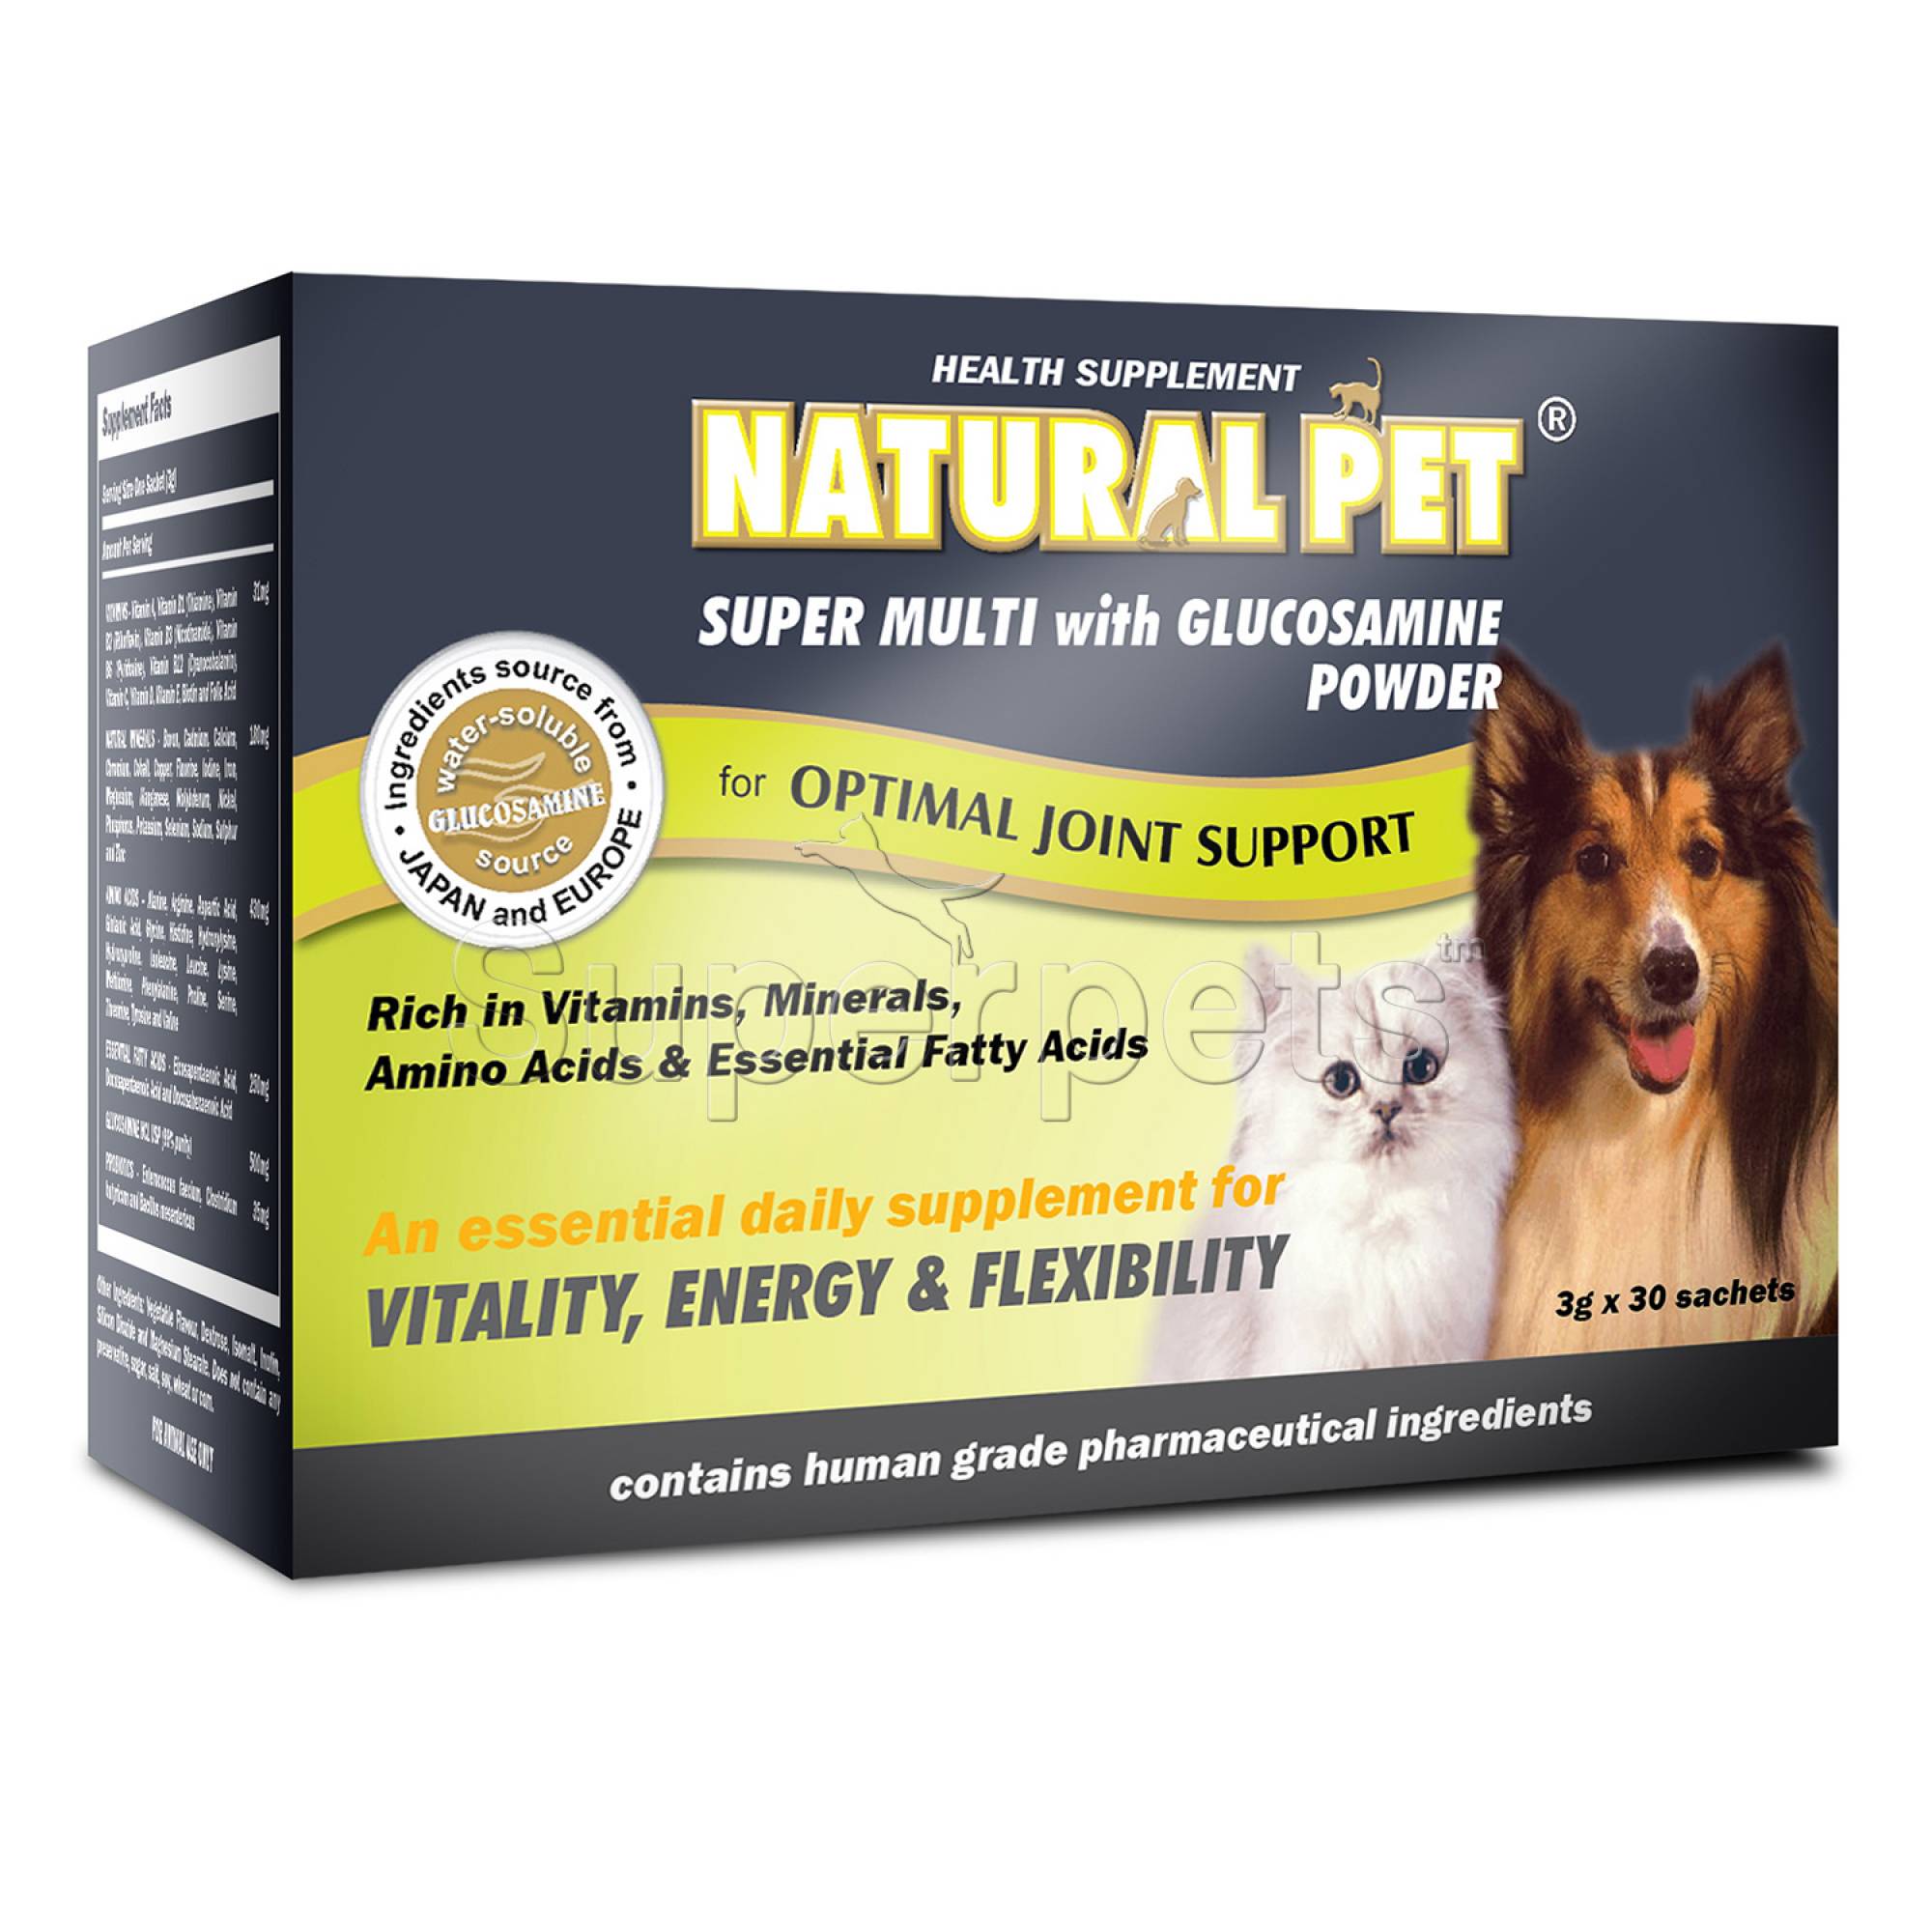 Natural Pet - Super Multi Glucosamine 3g x 30 sachets